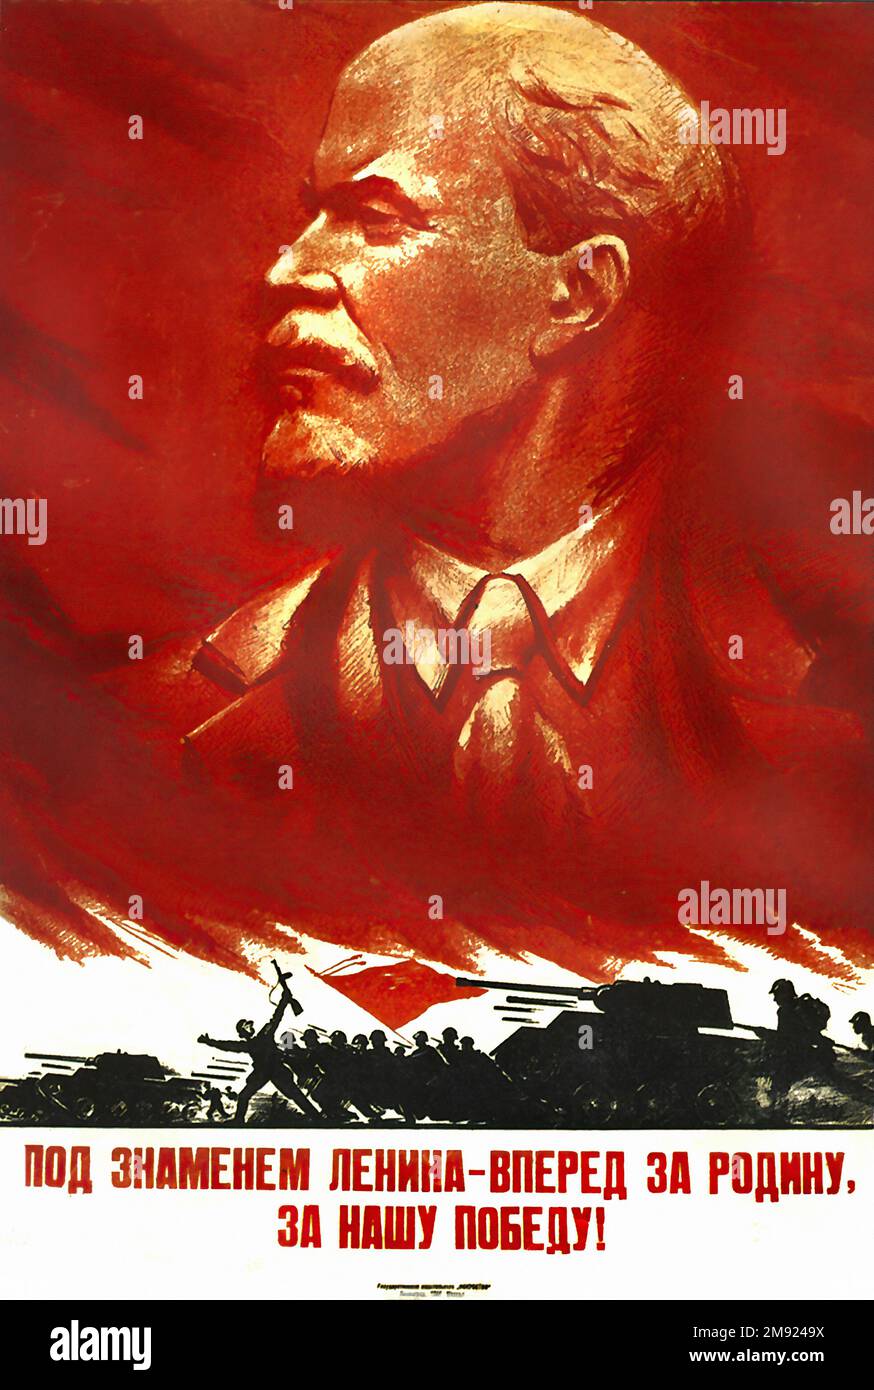 Sotto la bandiera di Lenin! (URSS) (tradotto dal russo) - poster di propaganda sovietica dell'URSS d'epoca Foto Stock